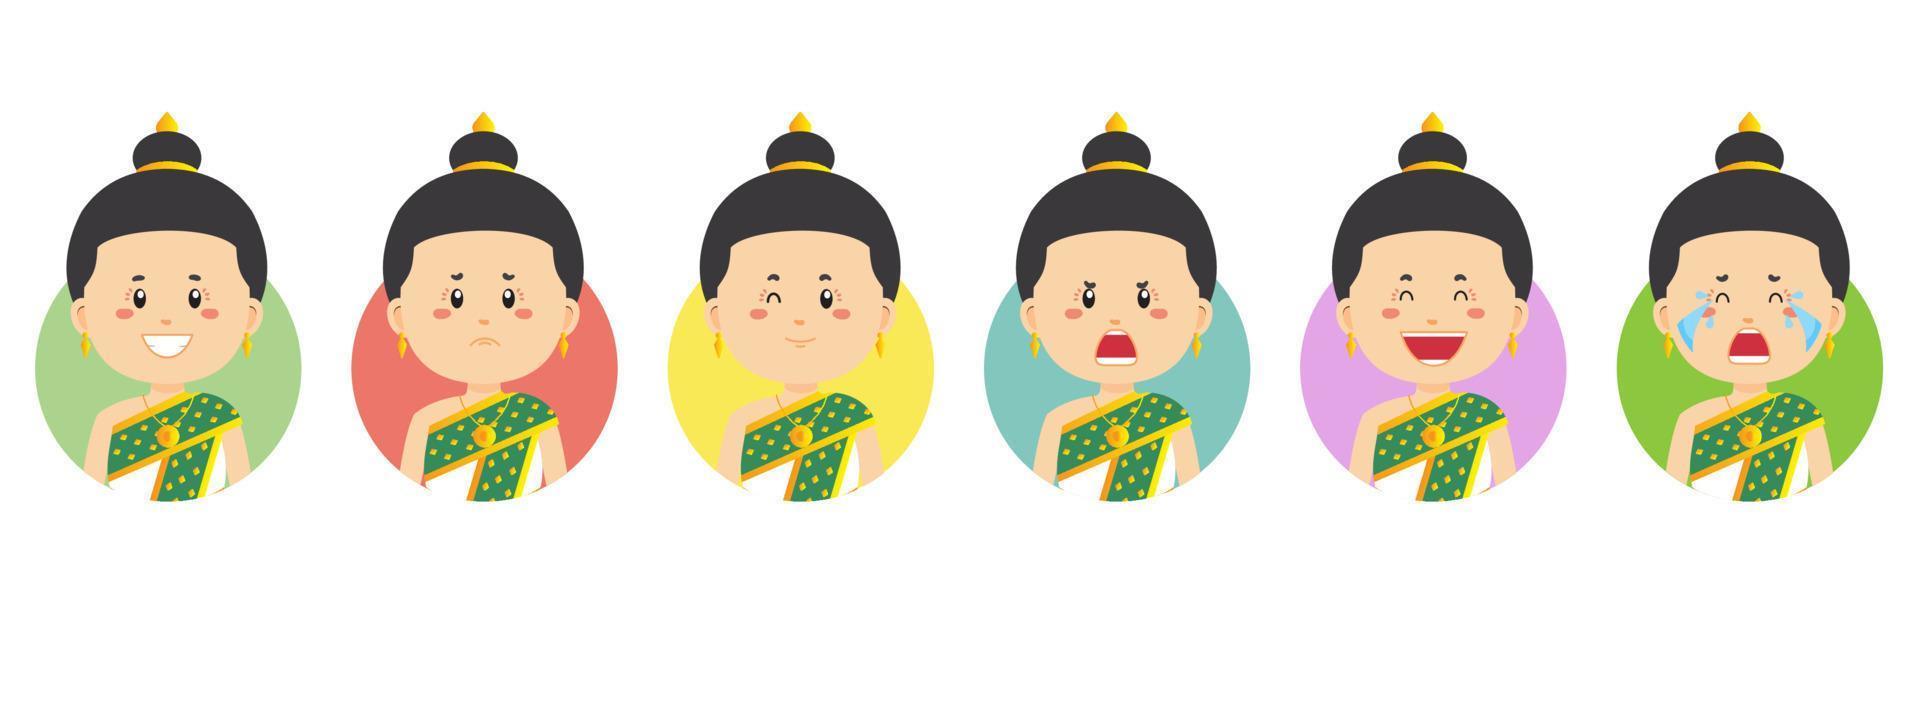 Laos-Avatar mit verschiedenen Ausdrucksformen vektor